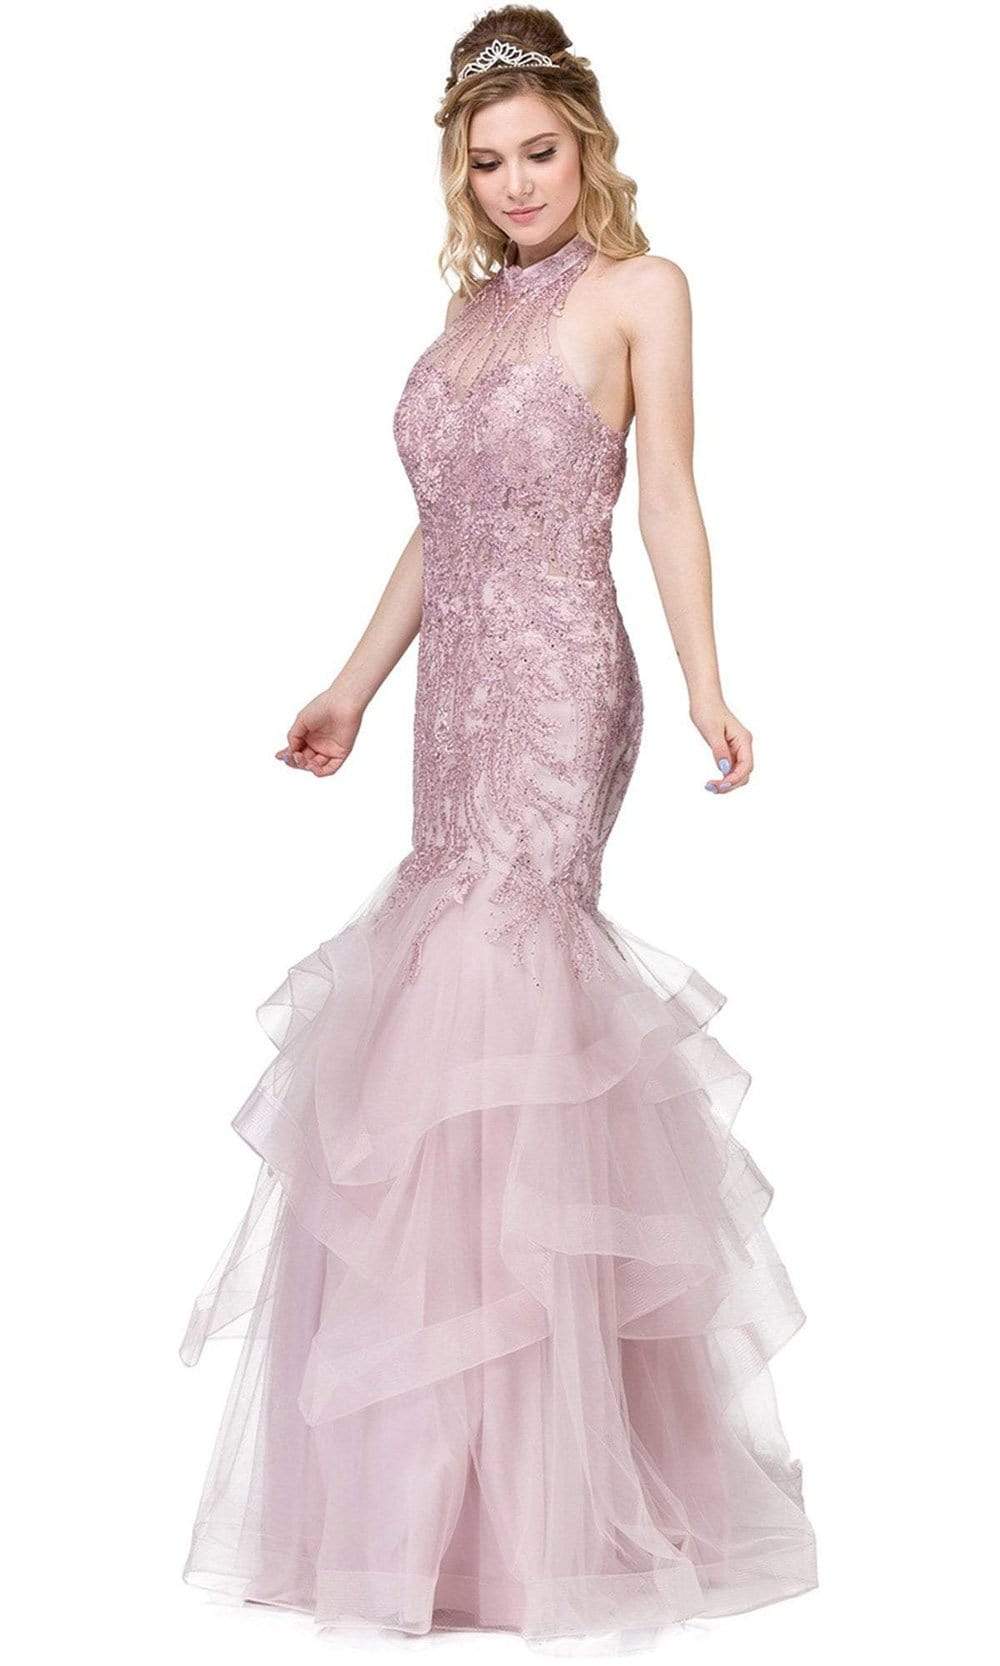 Dancing Queen - 2447 Gold Applique Halter Tiered Mermaid Prom Dress
